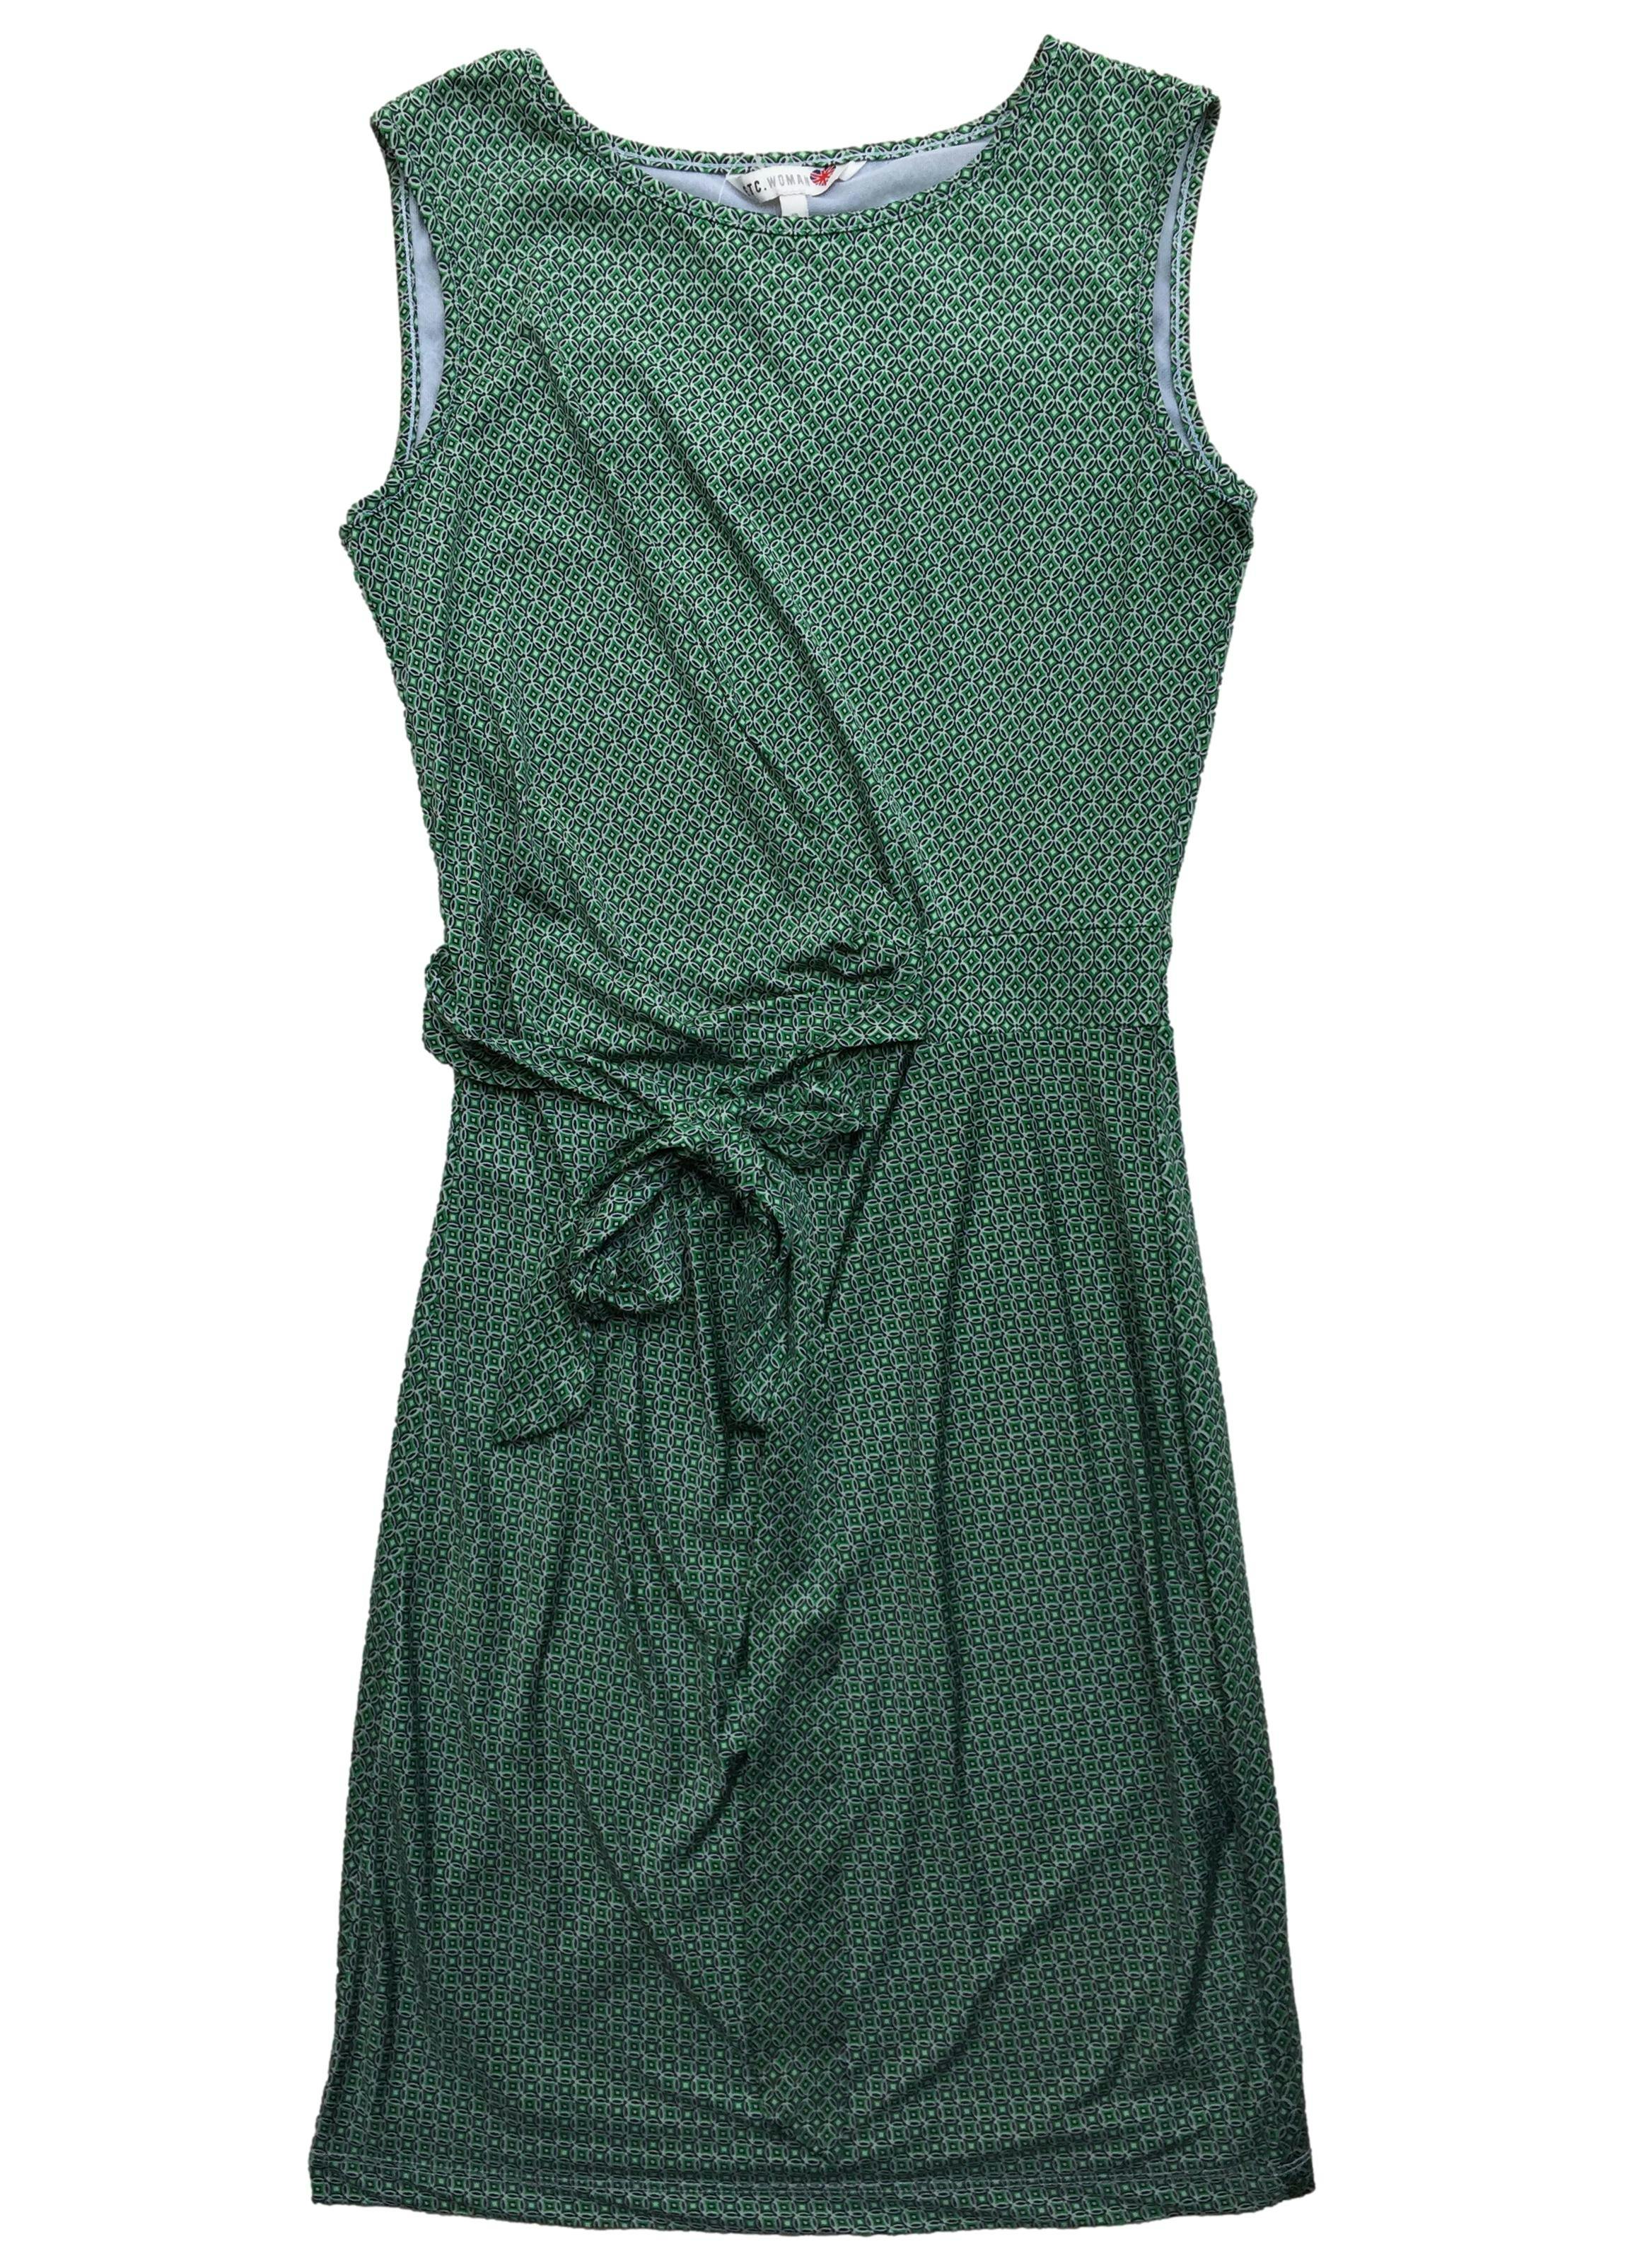 Vestido ETC verde con estampado óptico, tela stretch, forro, fruncido lateral y cintos. Busto 90cm, Largo 92cm.